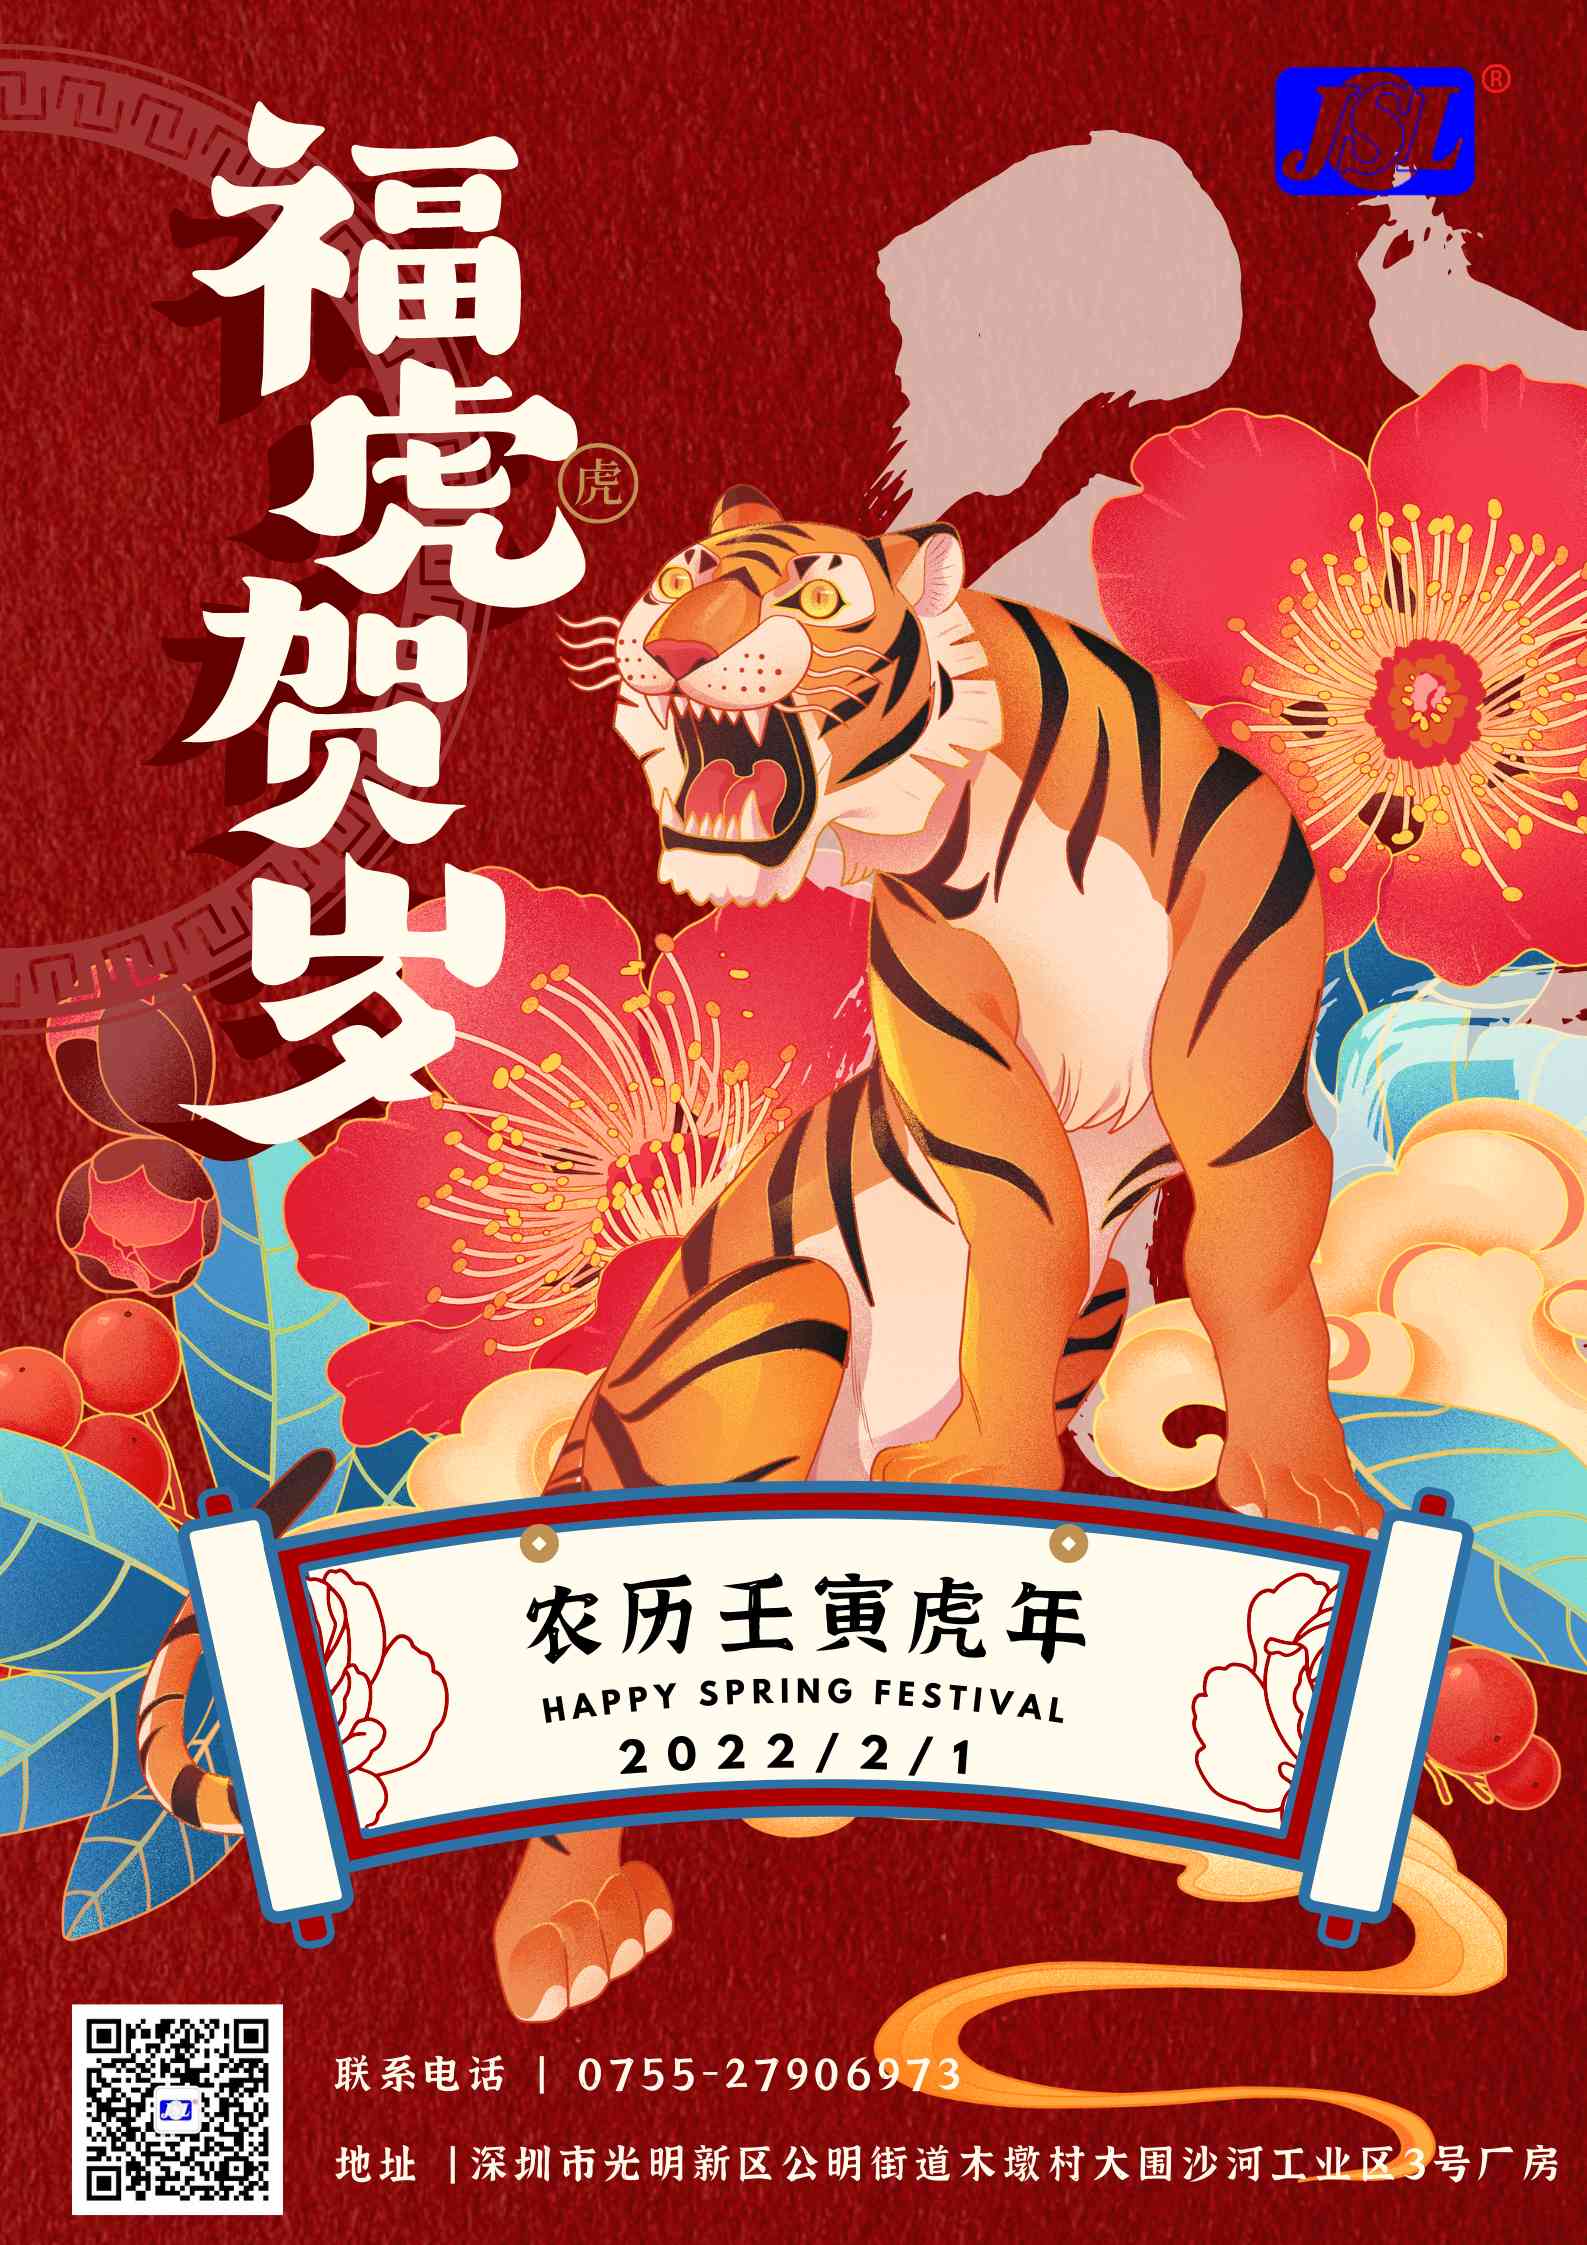 大红鹰dhy2288祝广大客户2022虎年春节快乐！